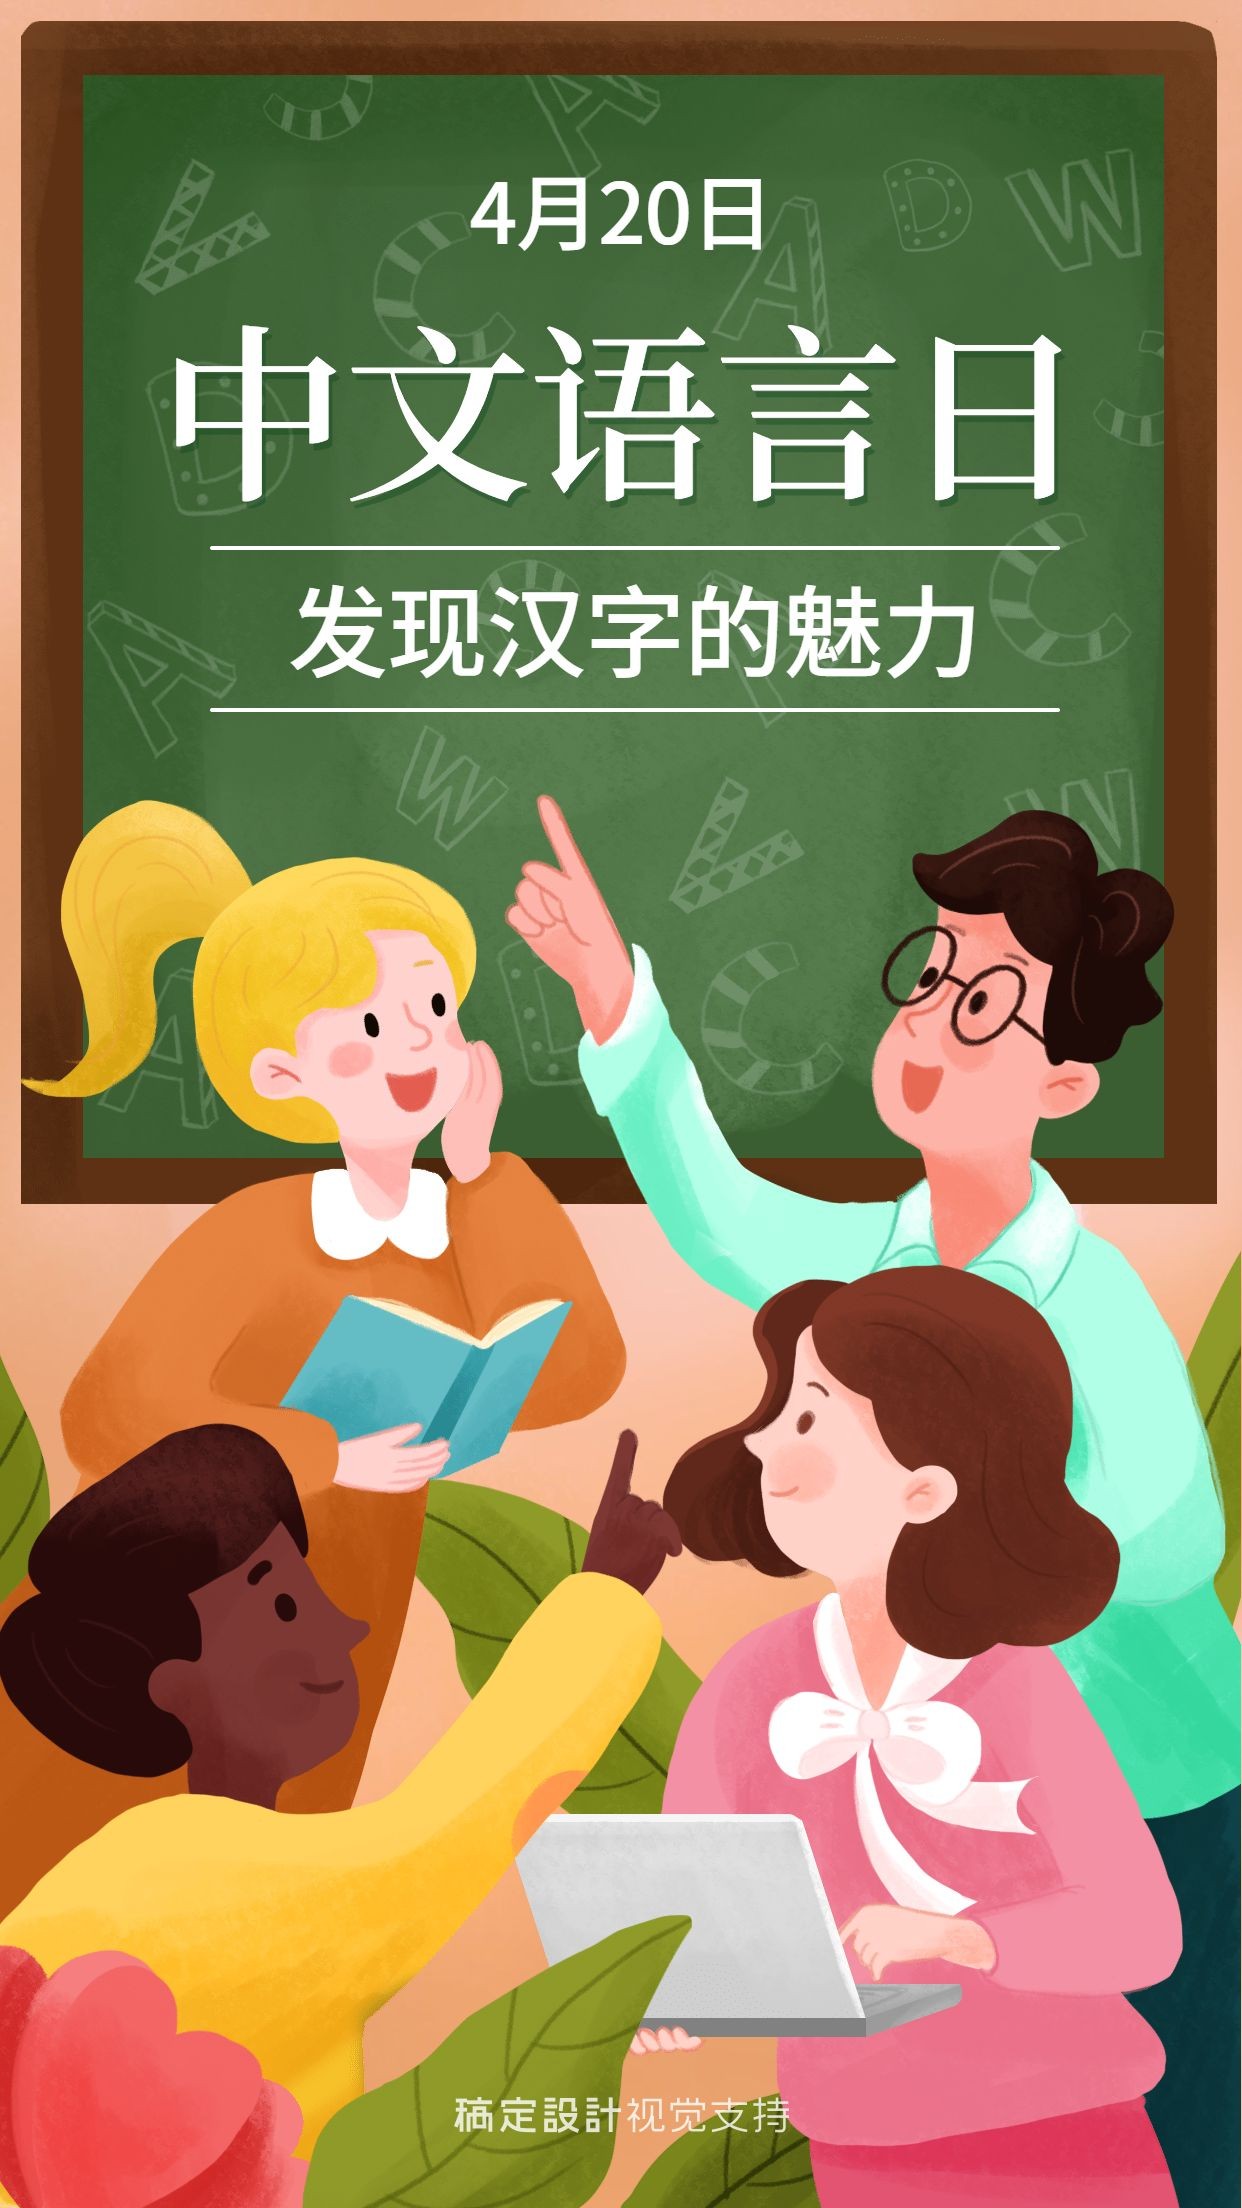 中文语言日宣传手绘插画海报预览效果